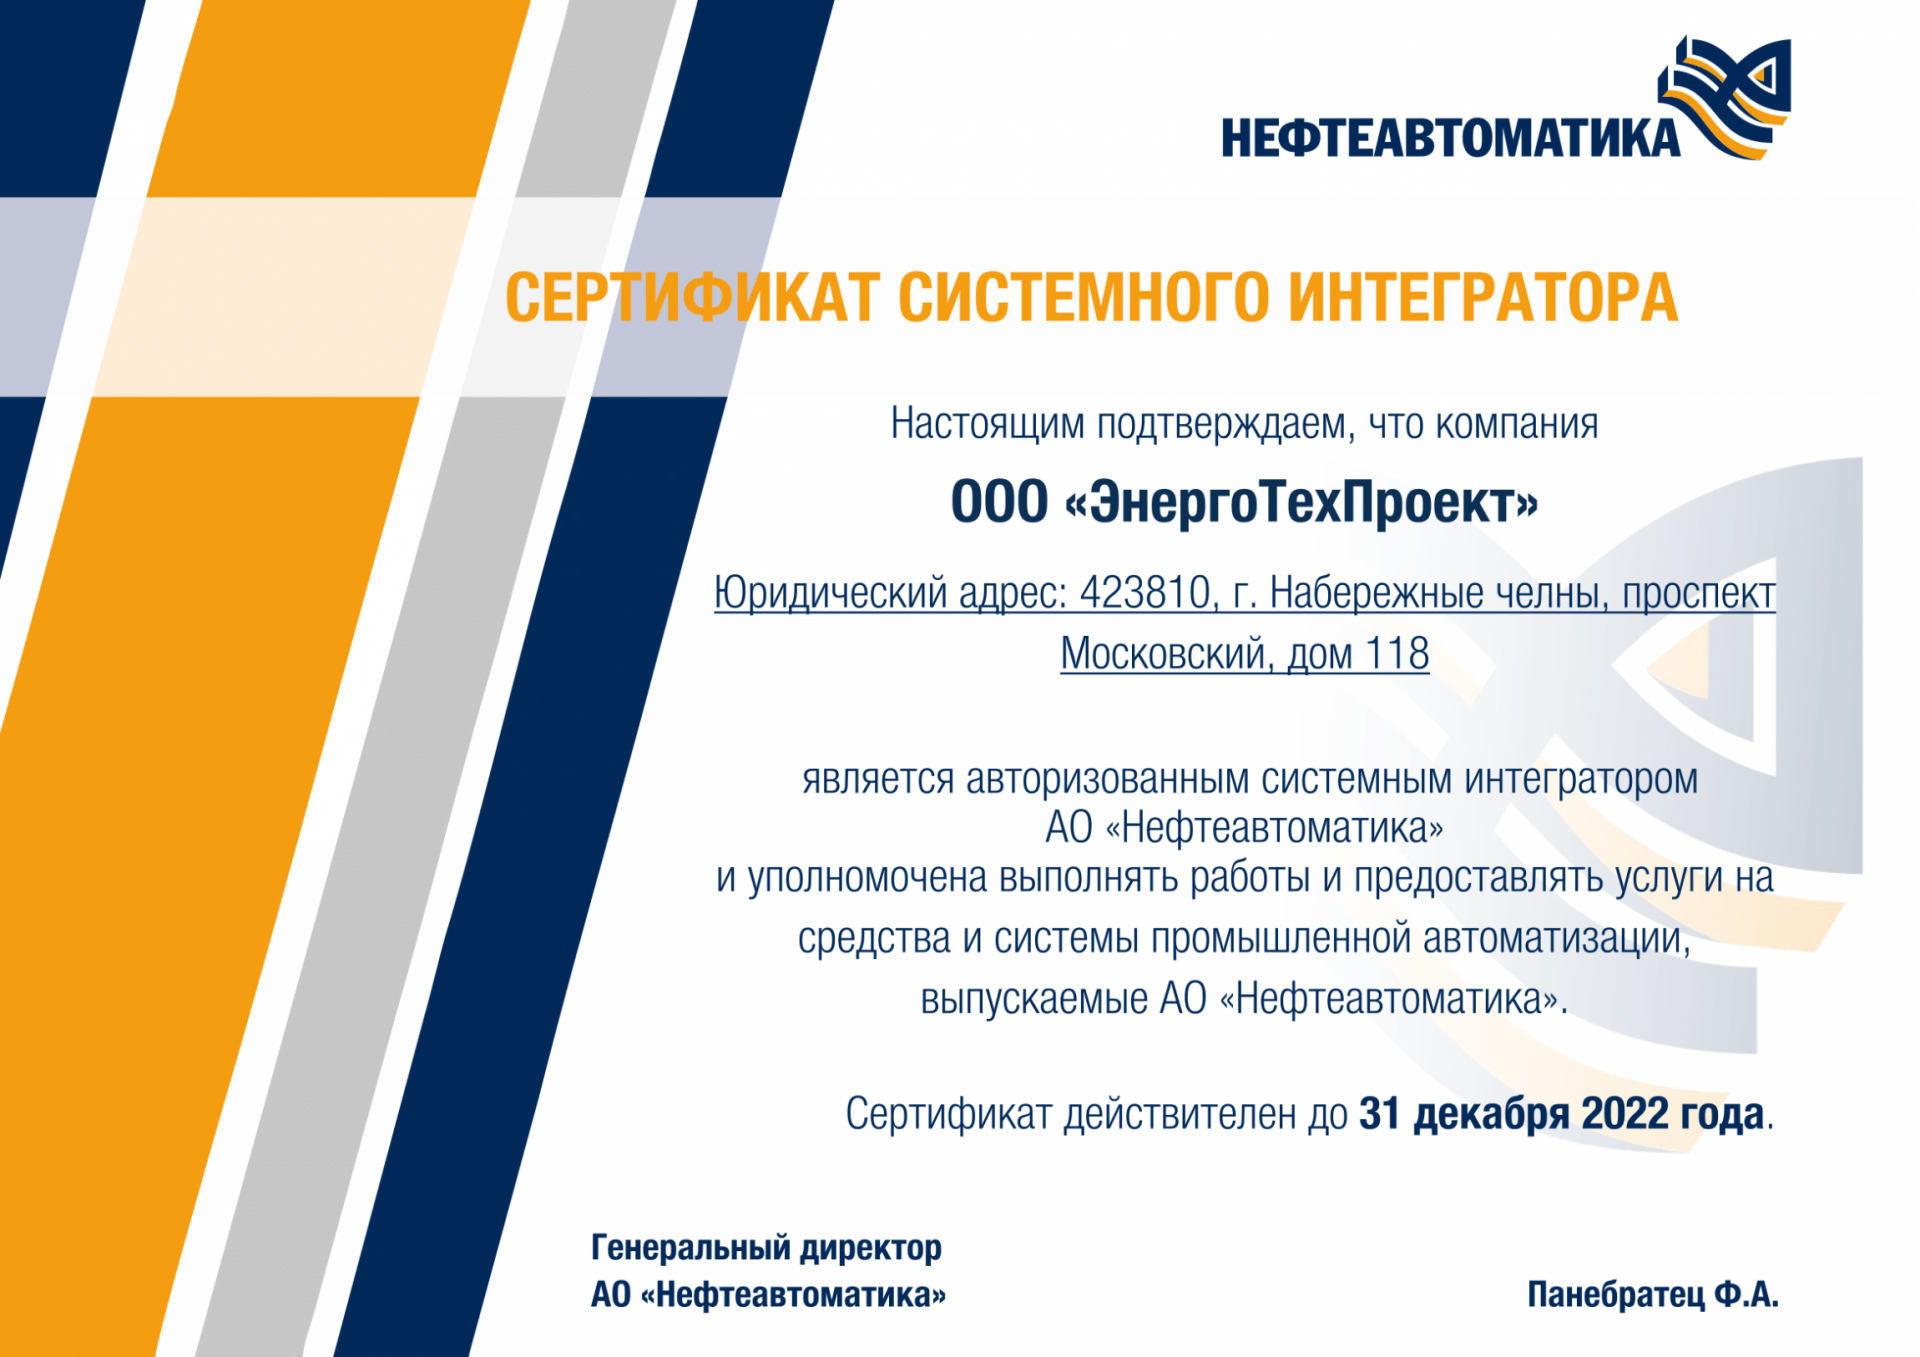 Компания ЭнергоТехПроект получила сертификат системного интегратора от компании Нефтеавтоматика - Новости